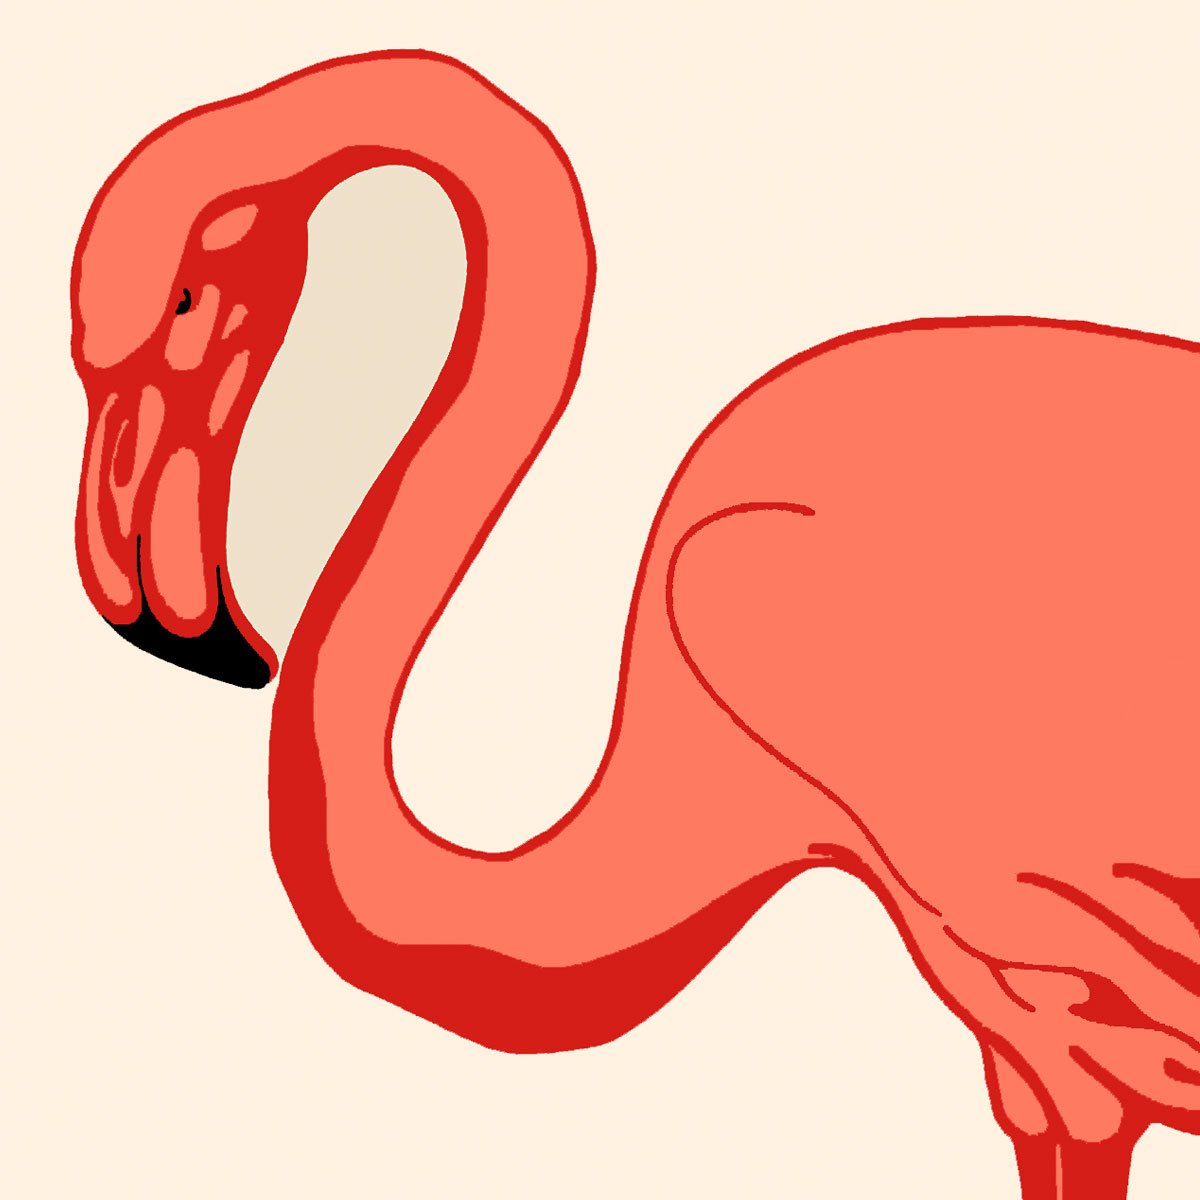 Flamingo Zoologischer Garten by Julius Klinger